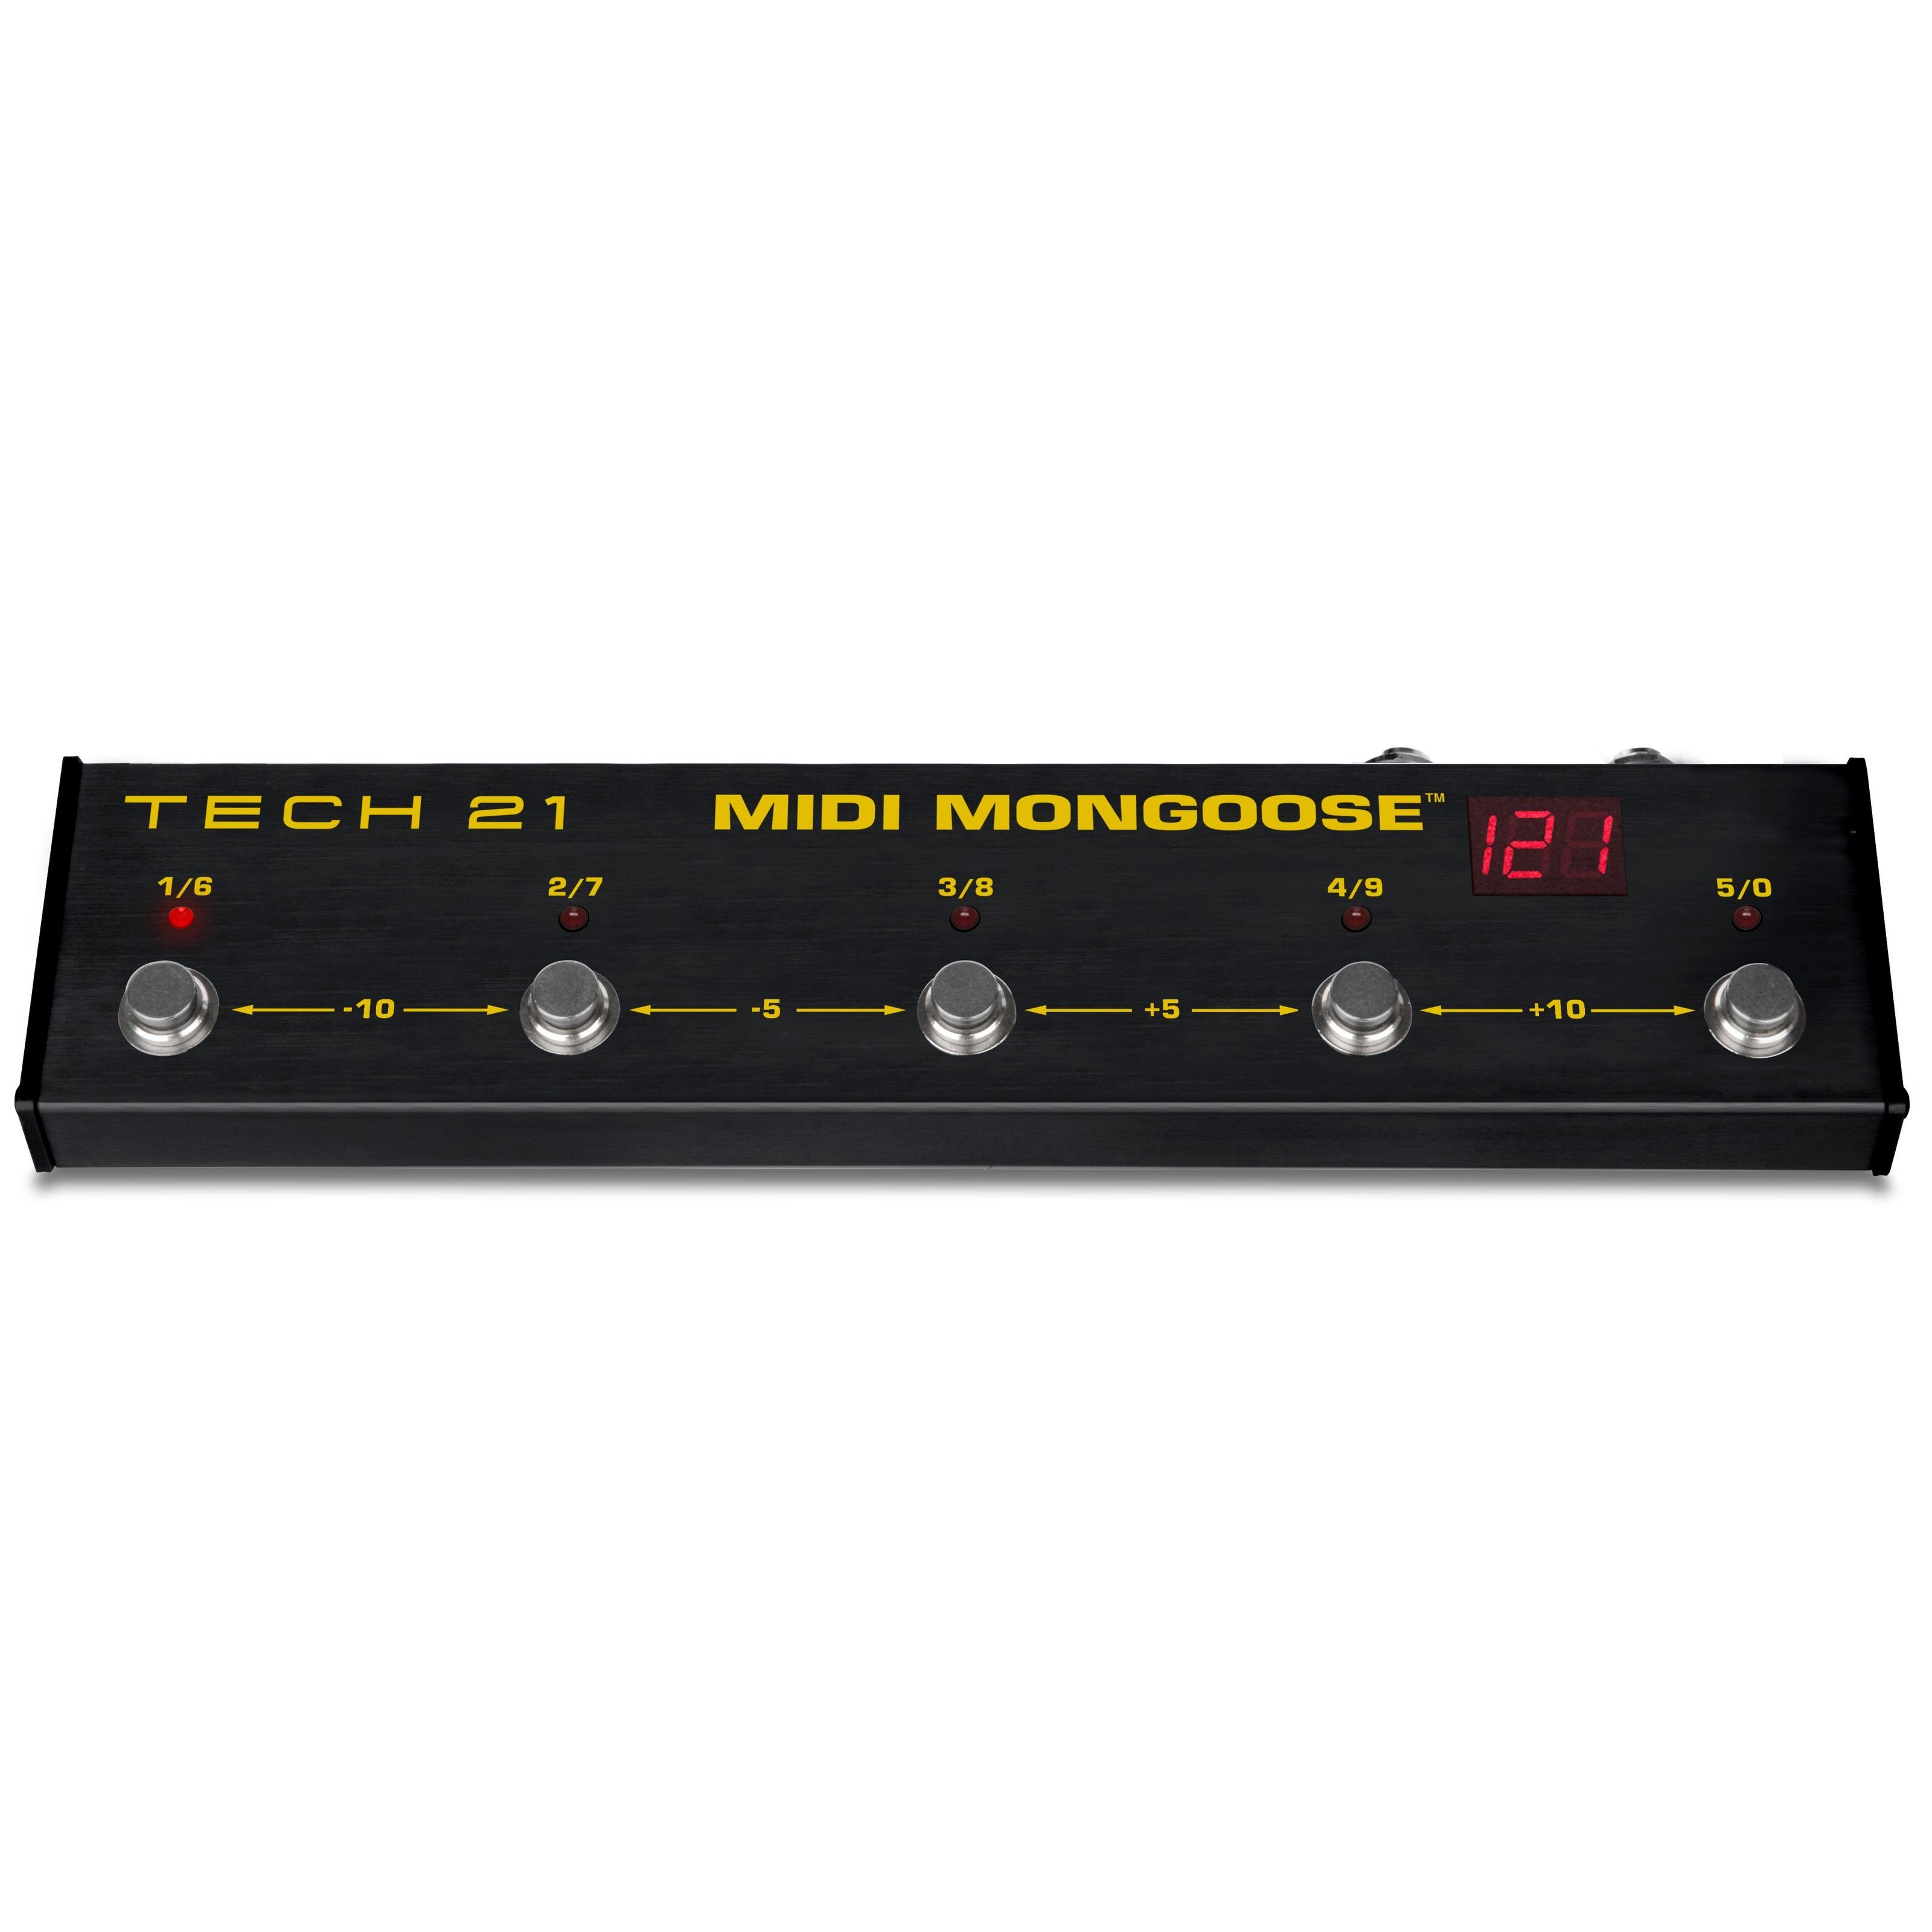 Verstärker Mongoose für Fußschalter 21 (MIDI Gitarrenverstärker) Tech - MIDI